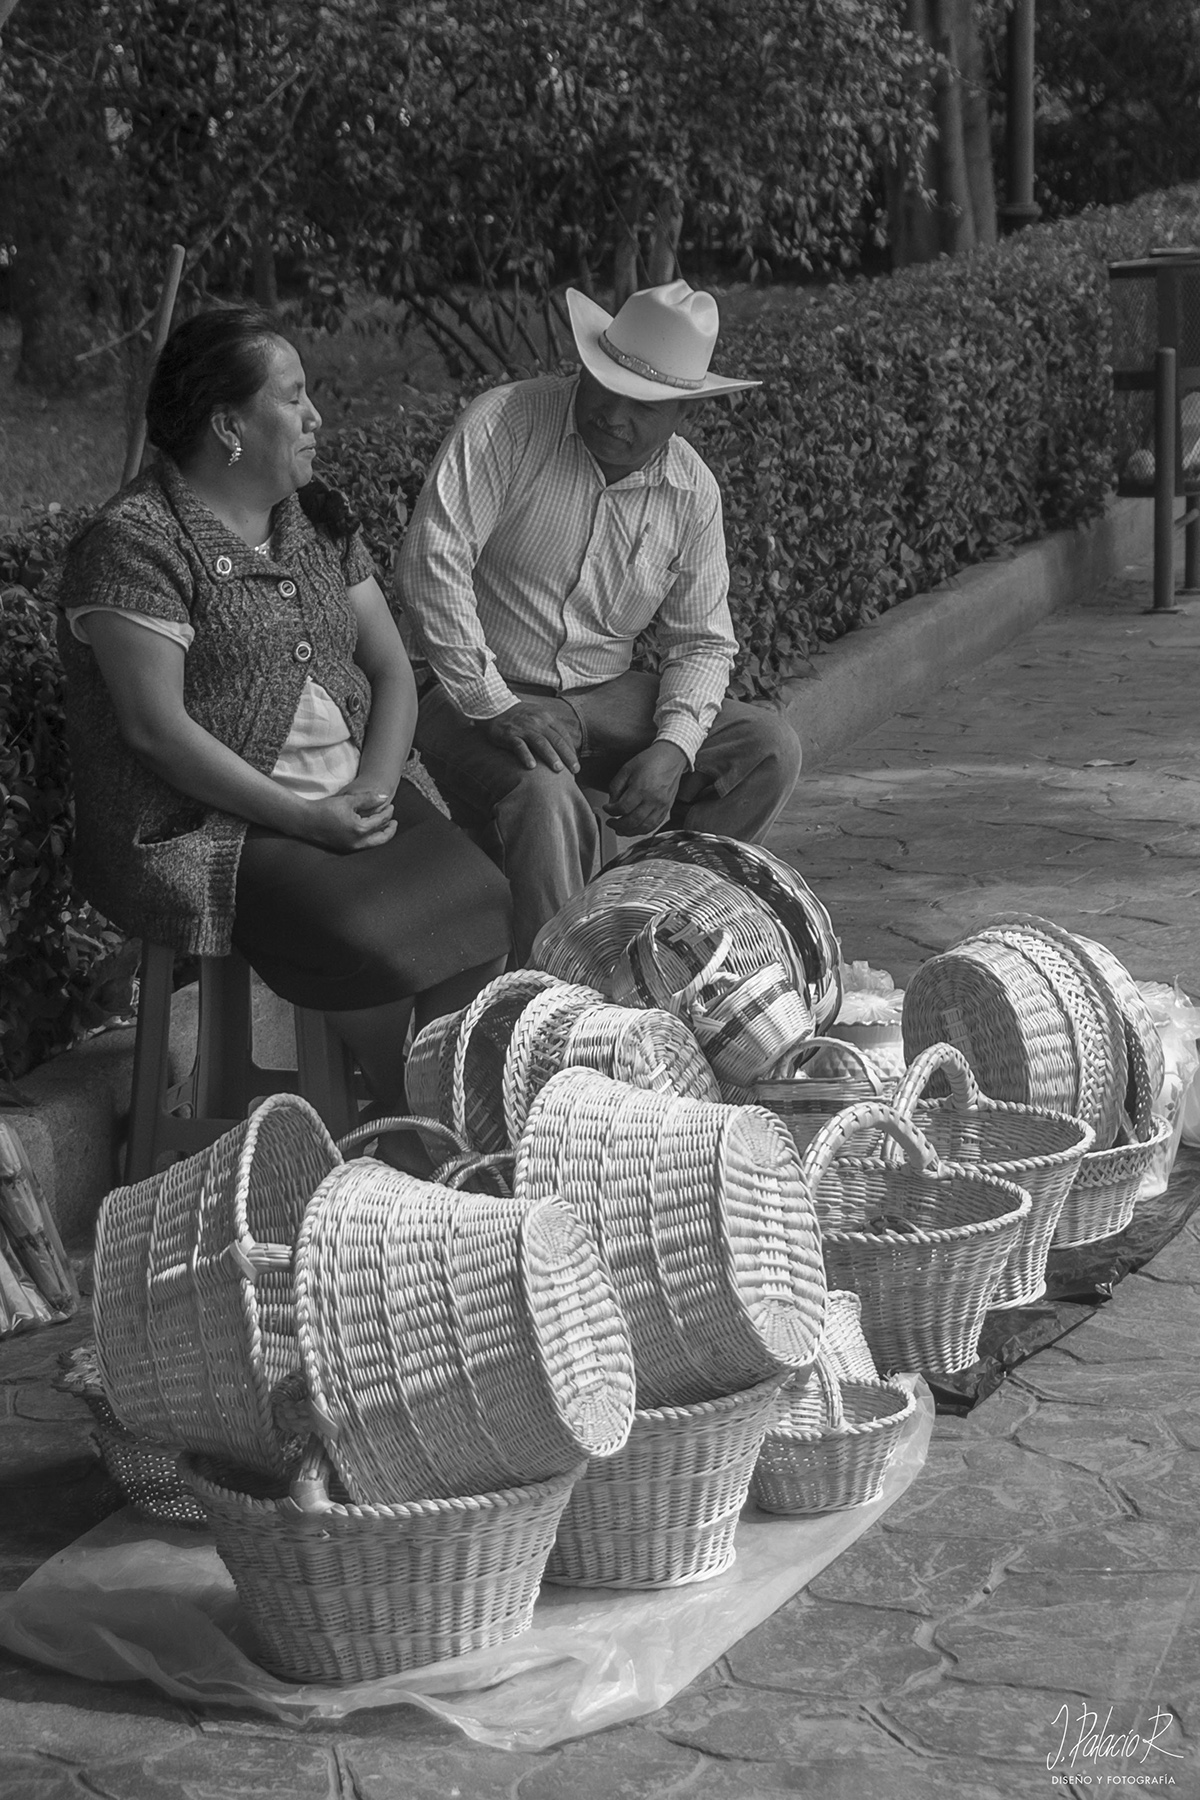 mexico Puebla Mex puebla mejico Atlixco popocatepetl Iztaccihuatl cultura mexicana